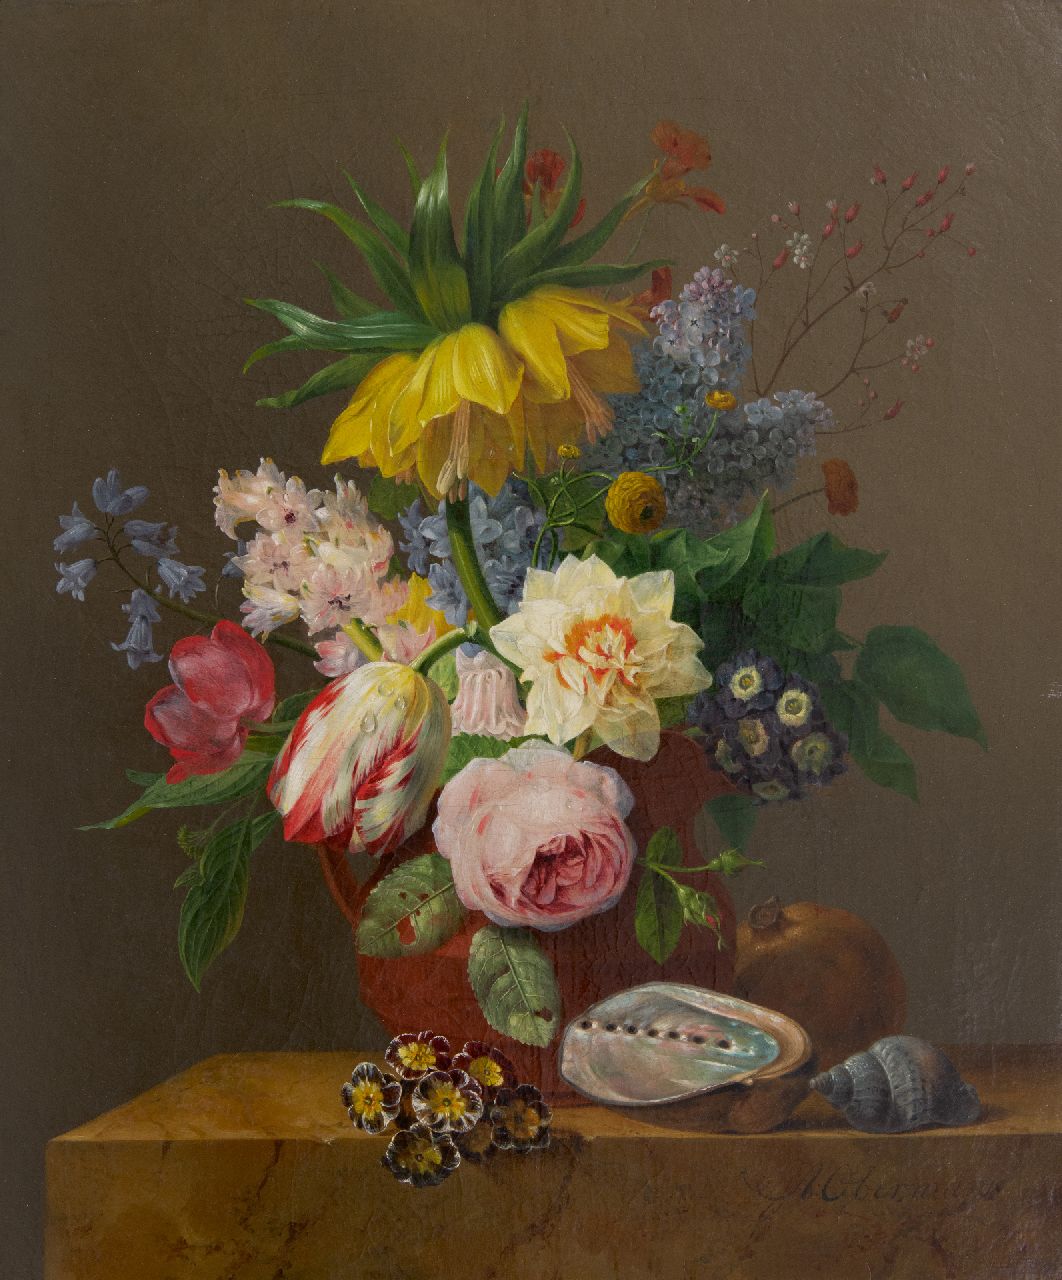 Oberman A.  | Anthony Oberman | Schilderijen te koop aangeboden | Stilleven met bloemen, granaatappel en schelpen op een marmeren plint, olieverf op doek 47,0 x 39,5 cm, gesigneerd rechtsonder